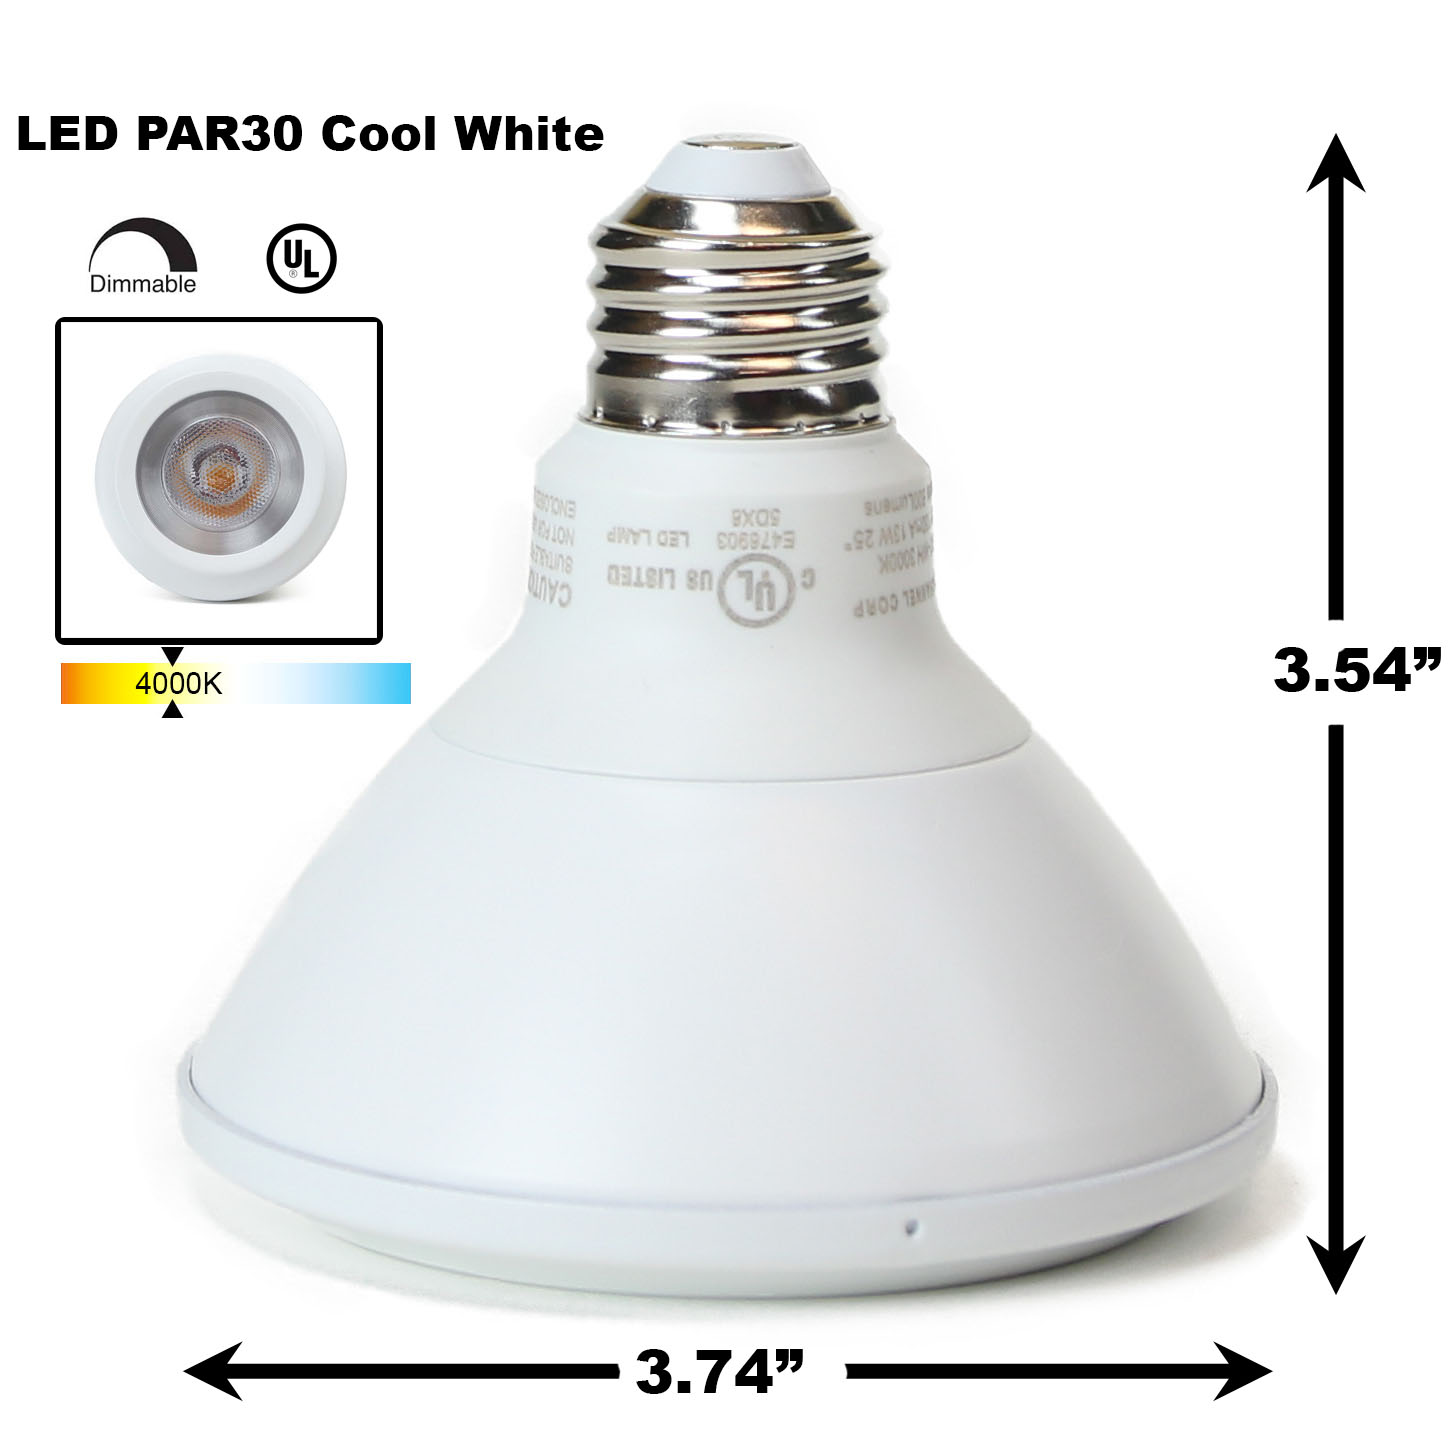 Entertainment uitspraak Warmte Buy PAR30 LED Light Bulb 13W 4000K. In Stock & Fast Ship - Direct -Lighting.com